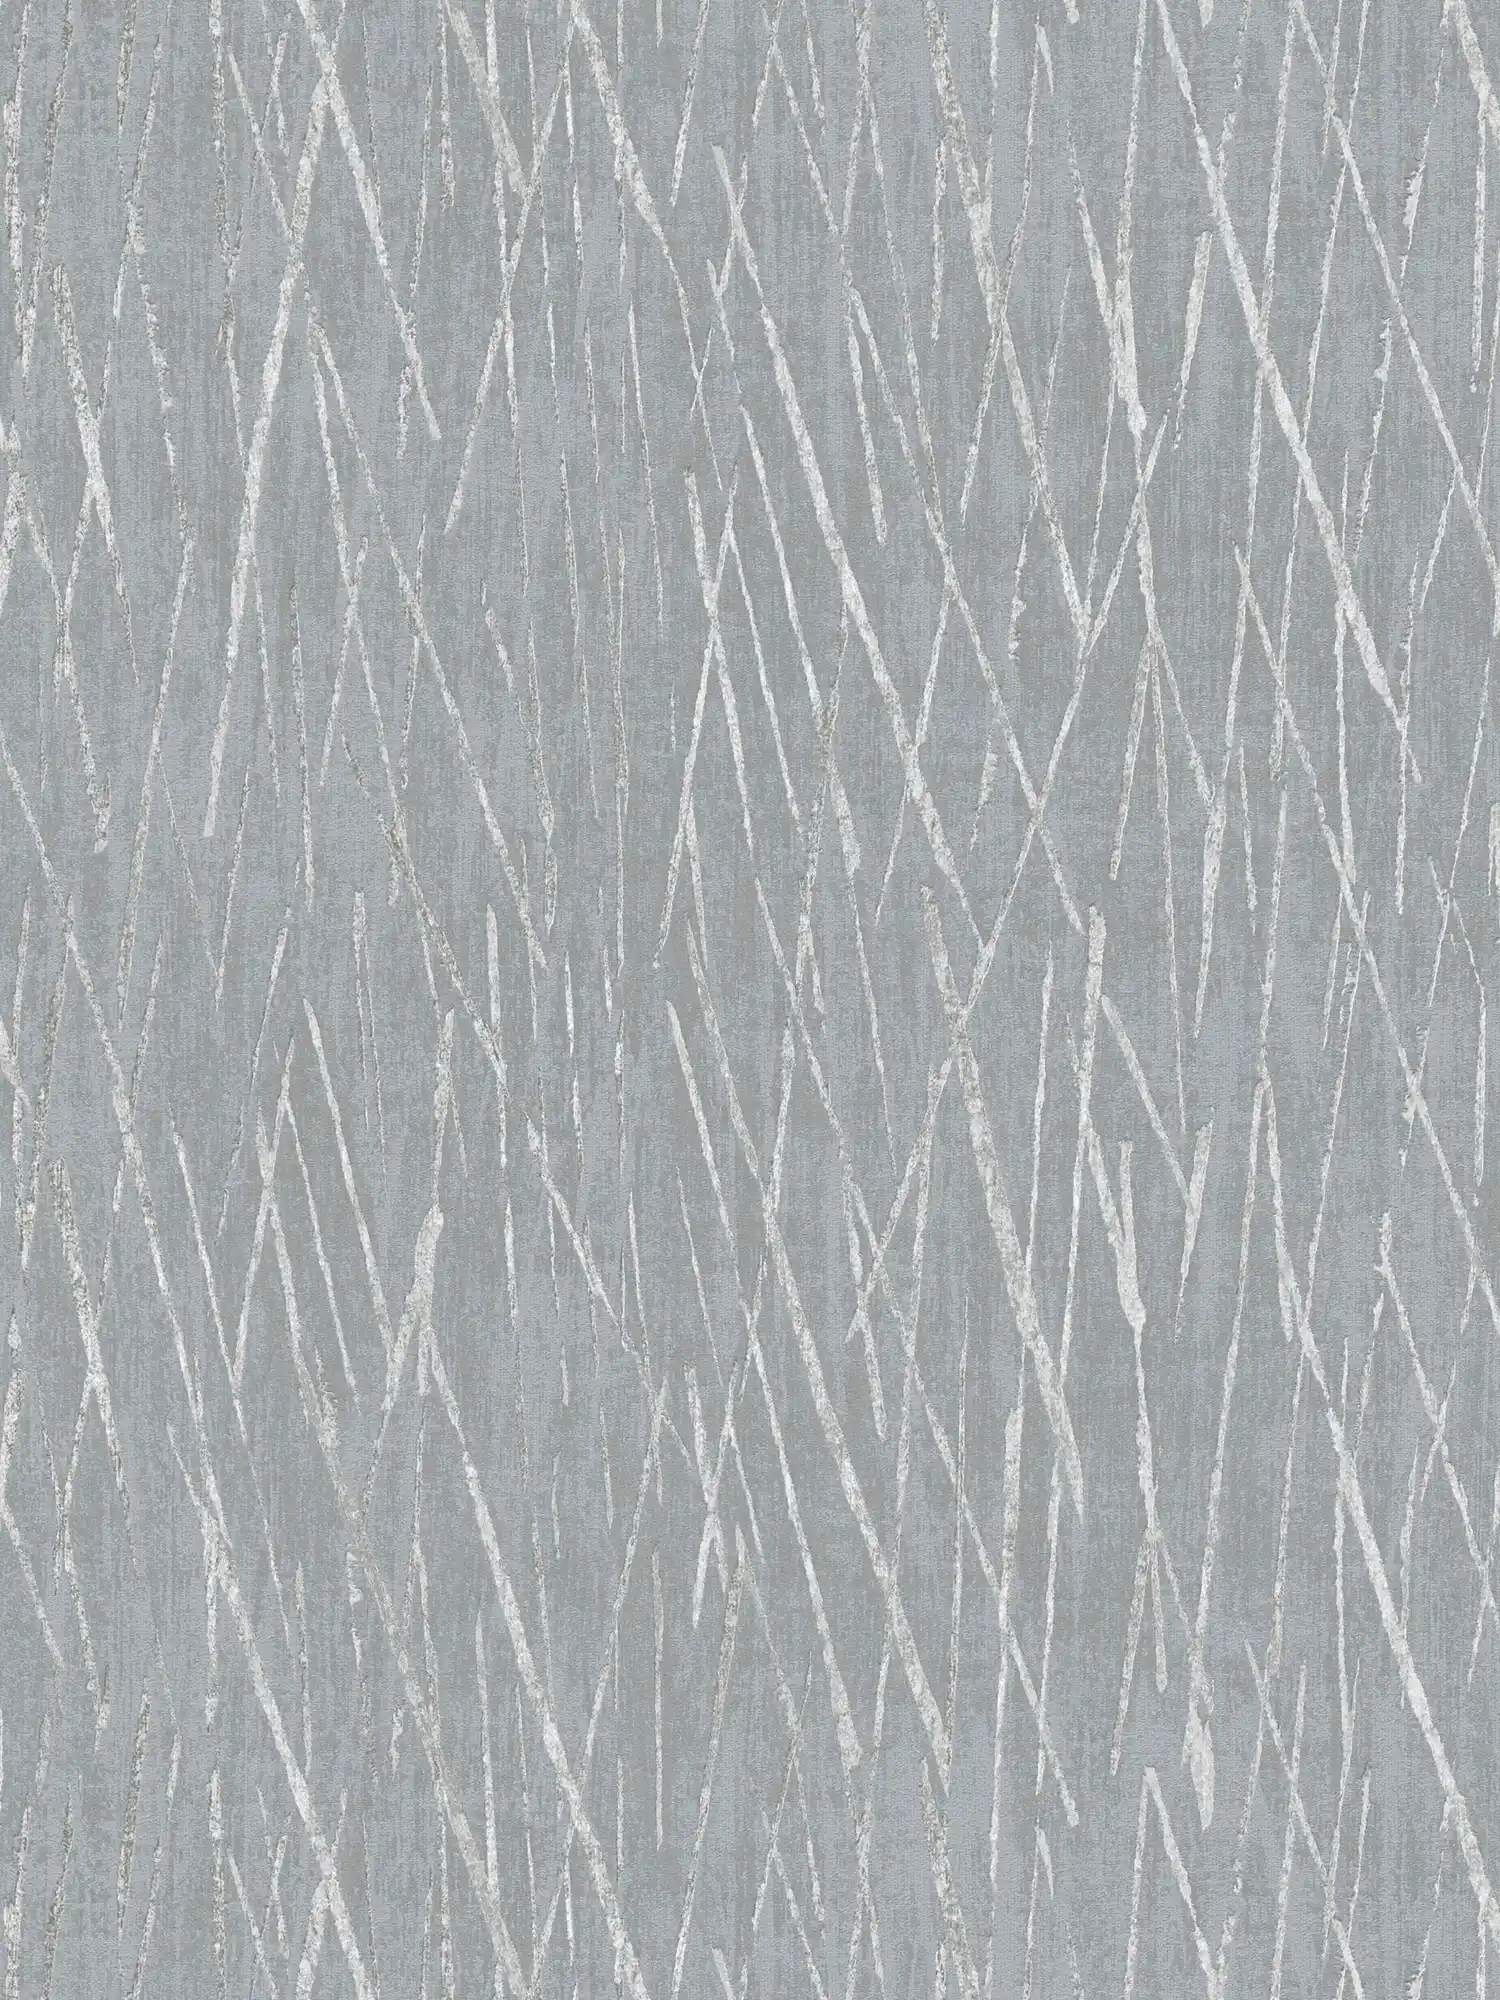 Papel pintado no tejido con diseño de naturaleza y efecto metálico - gris, metálico
